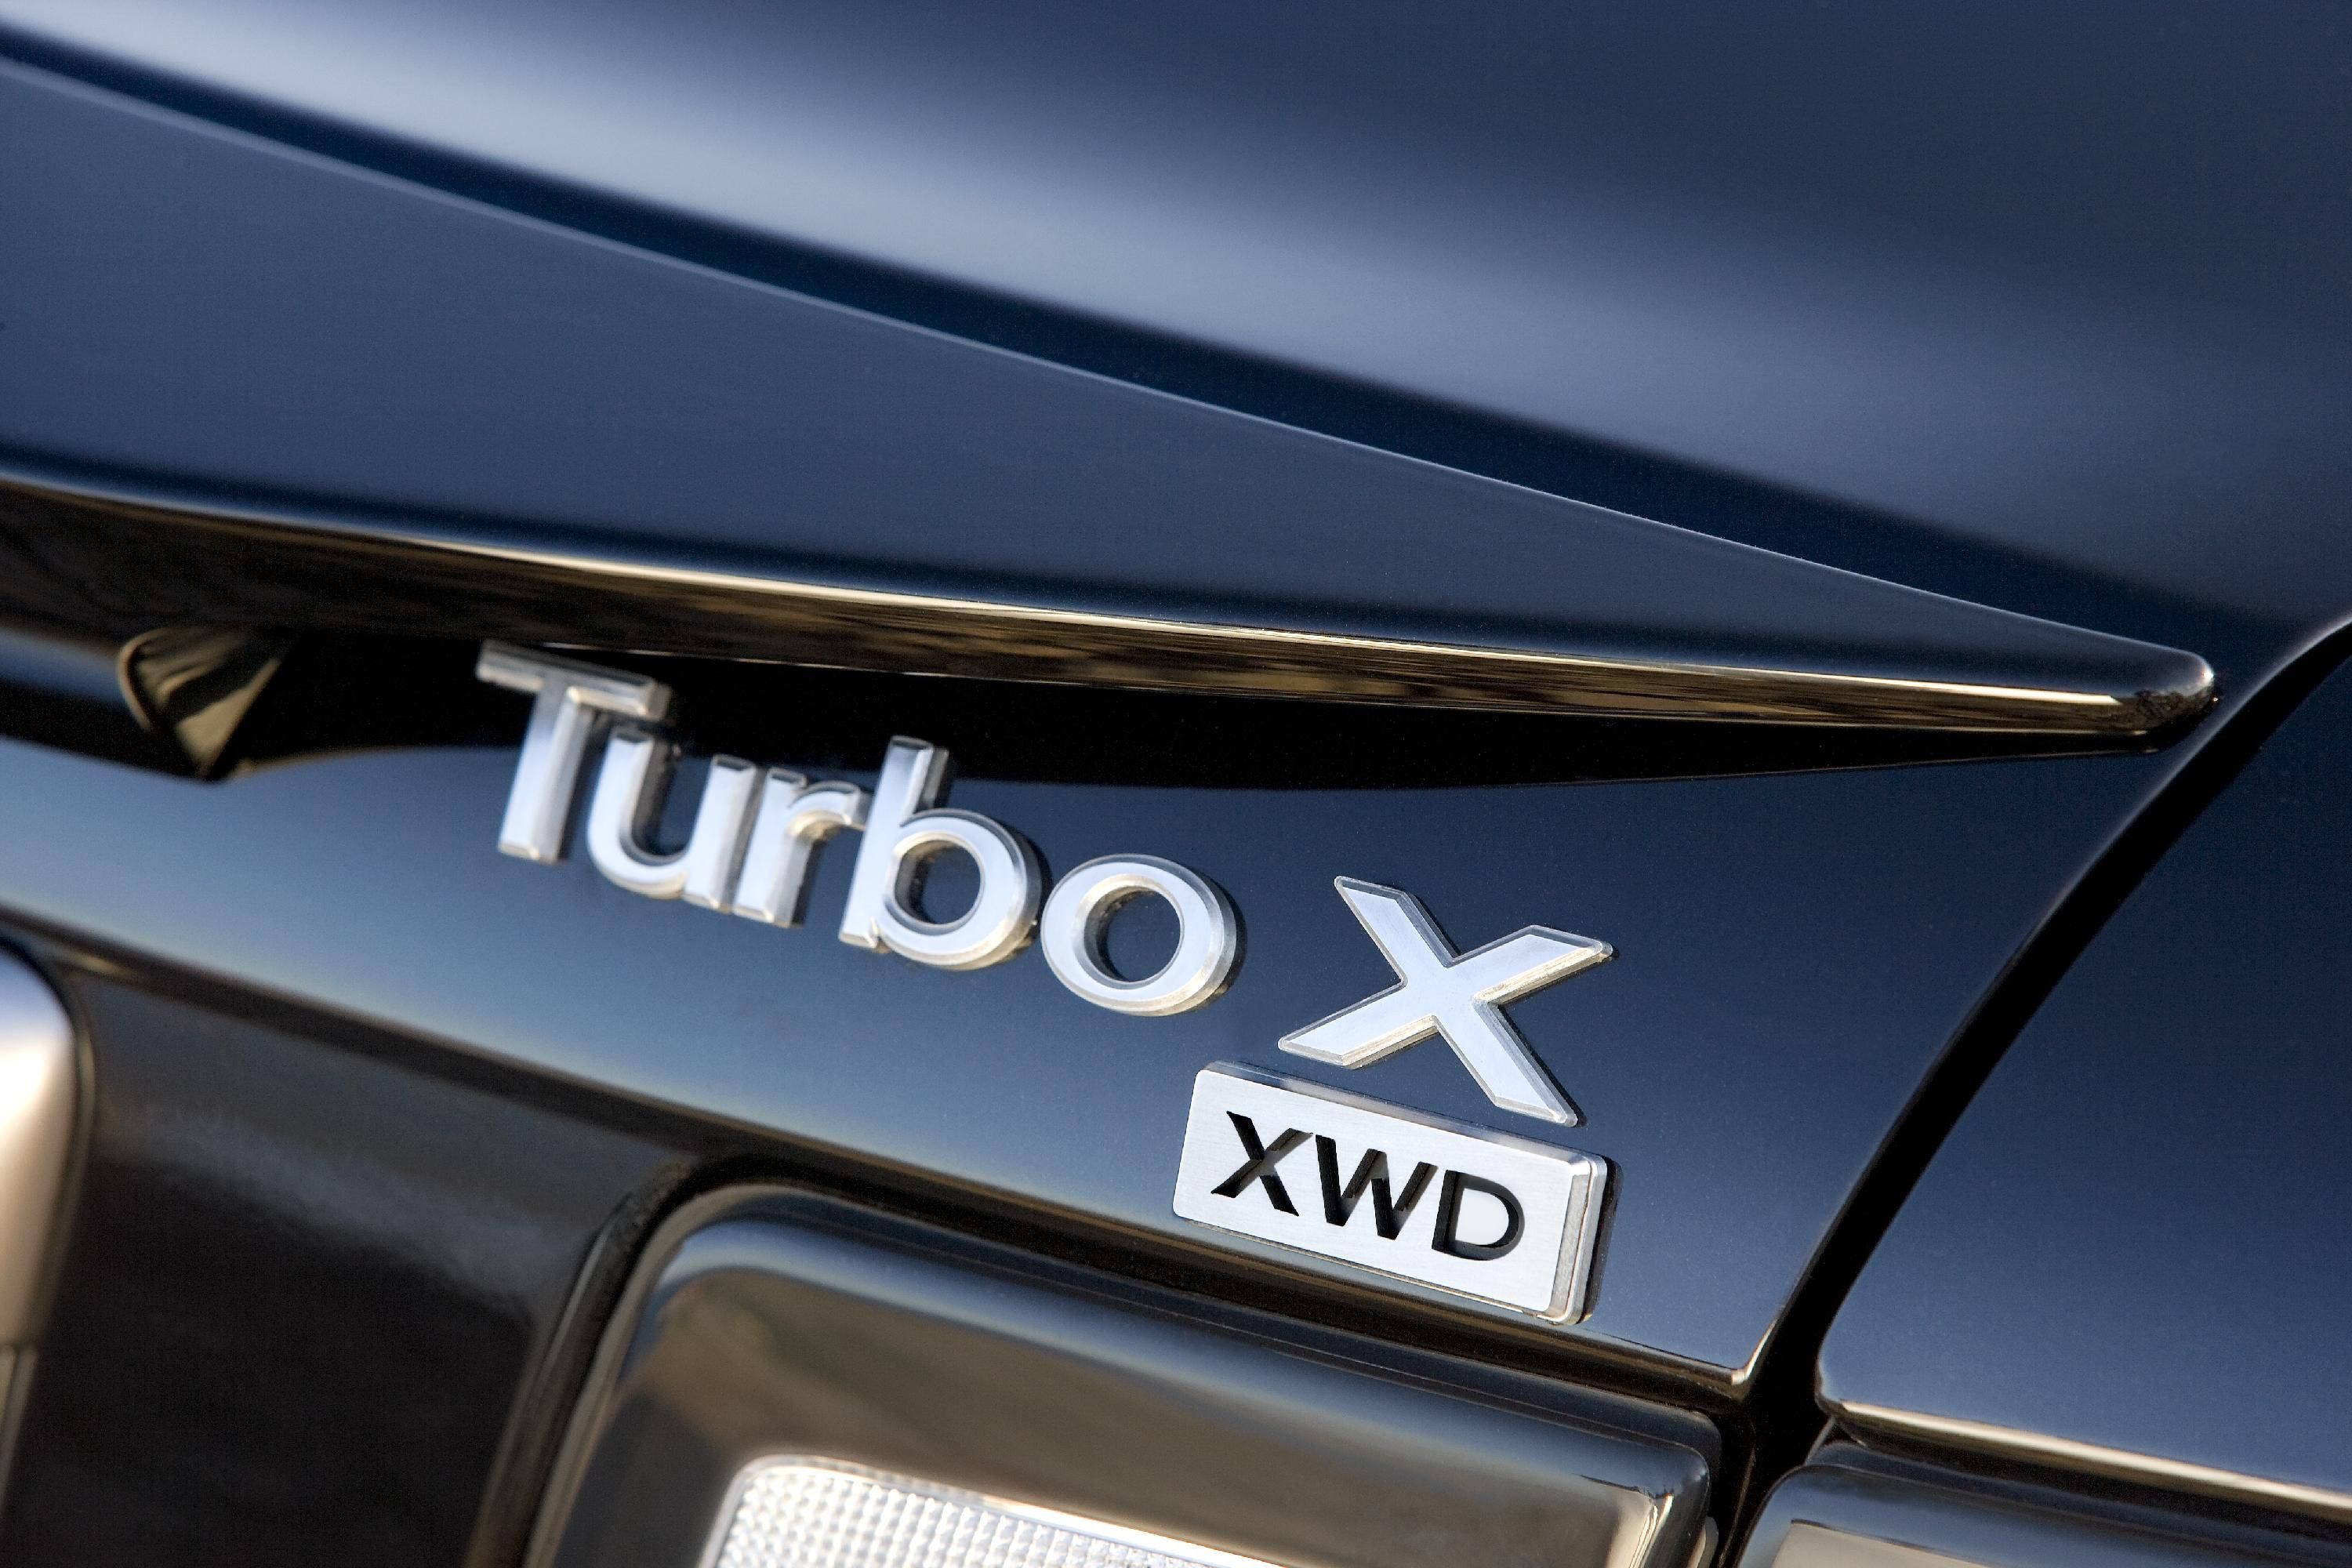 2008 Saab Turbo X 